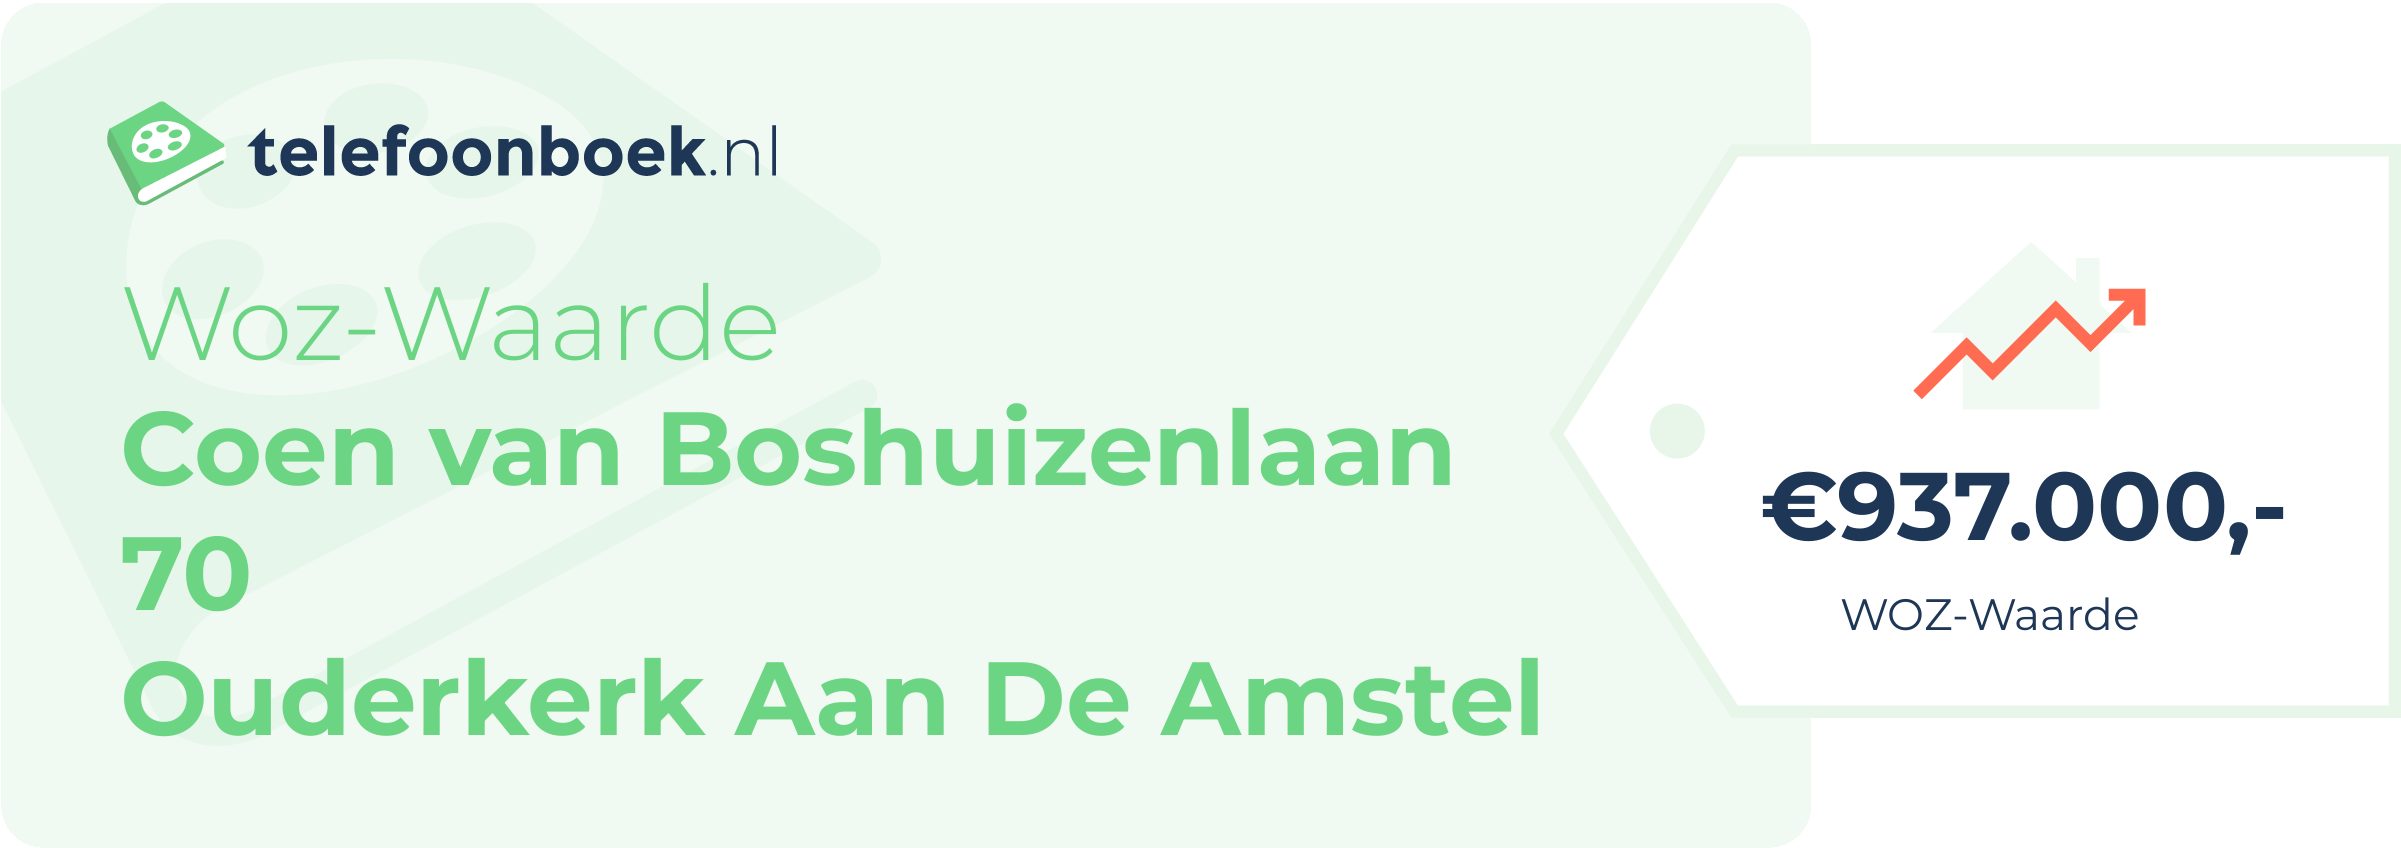 WOZ-waarde Coen Van Boshuizenlaan 70 Ouderkerk Aan De Amstel